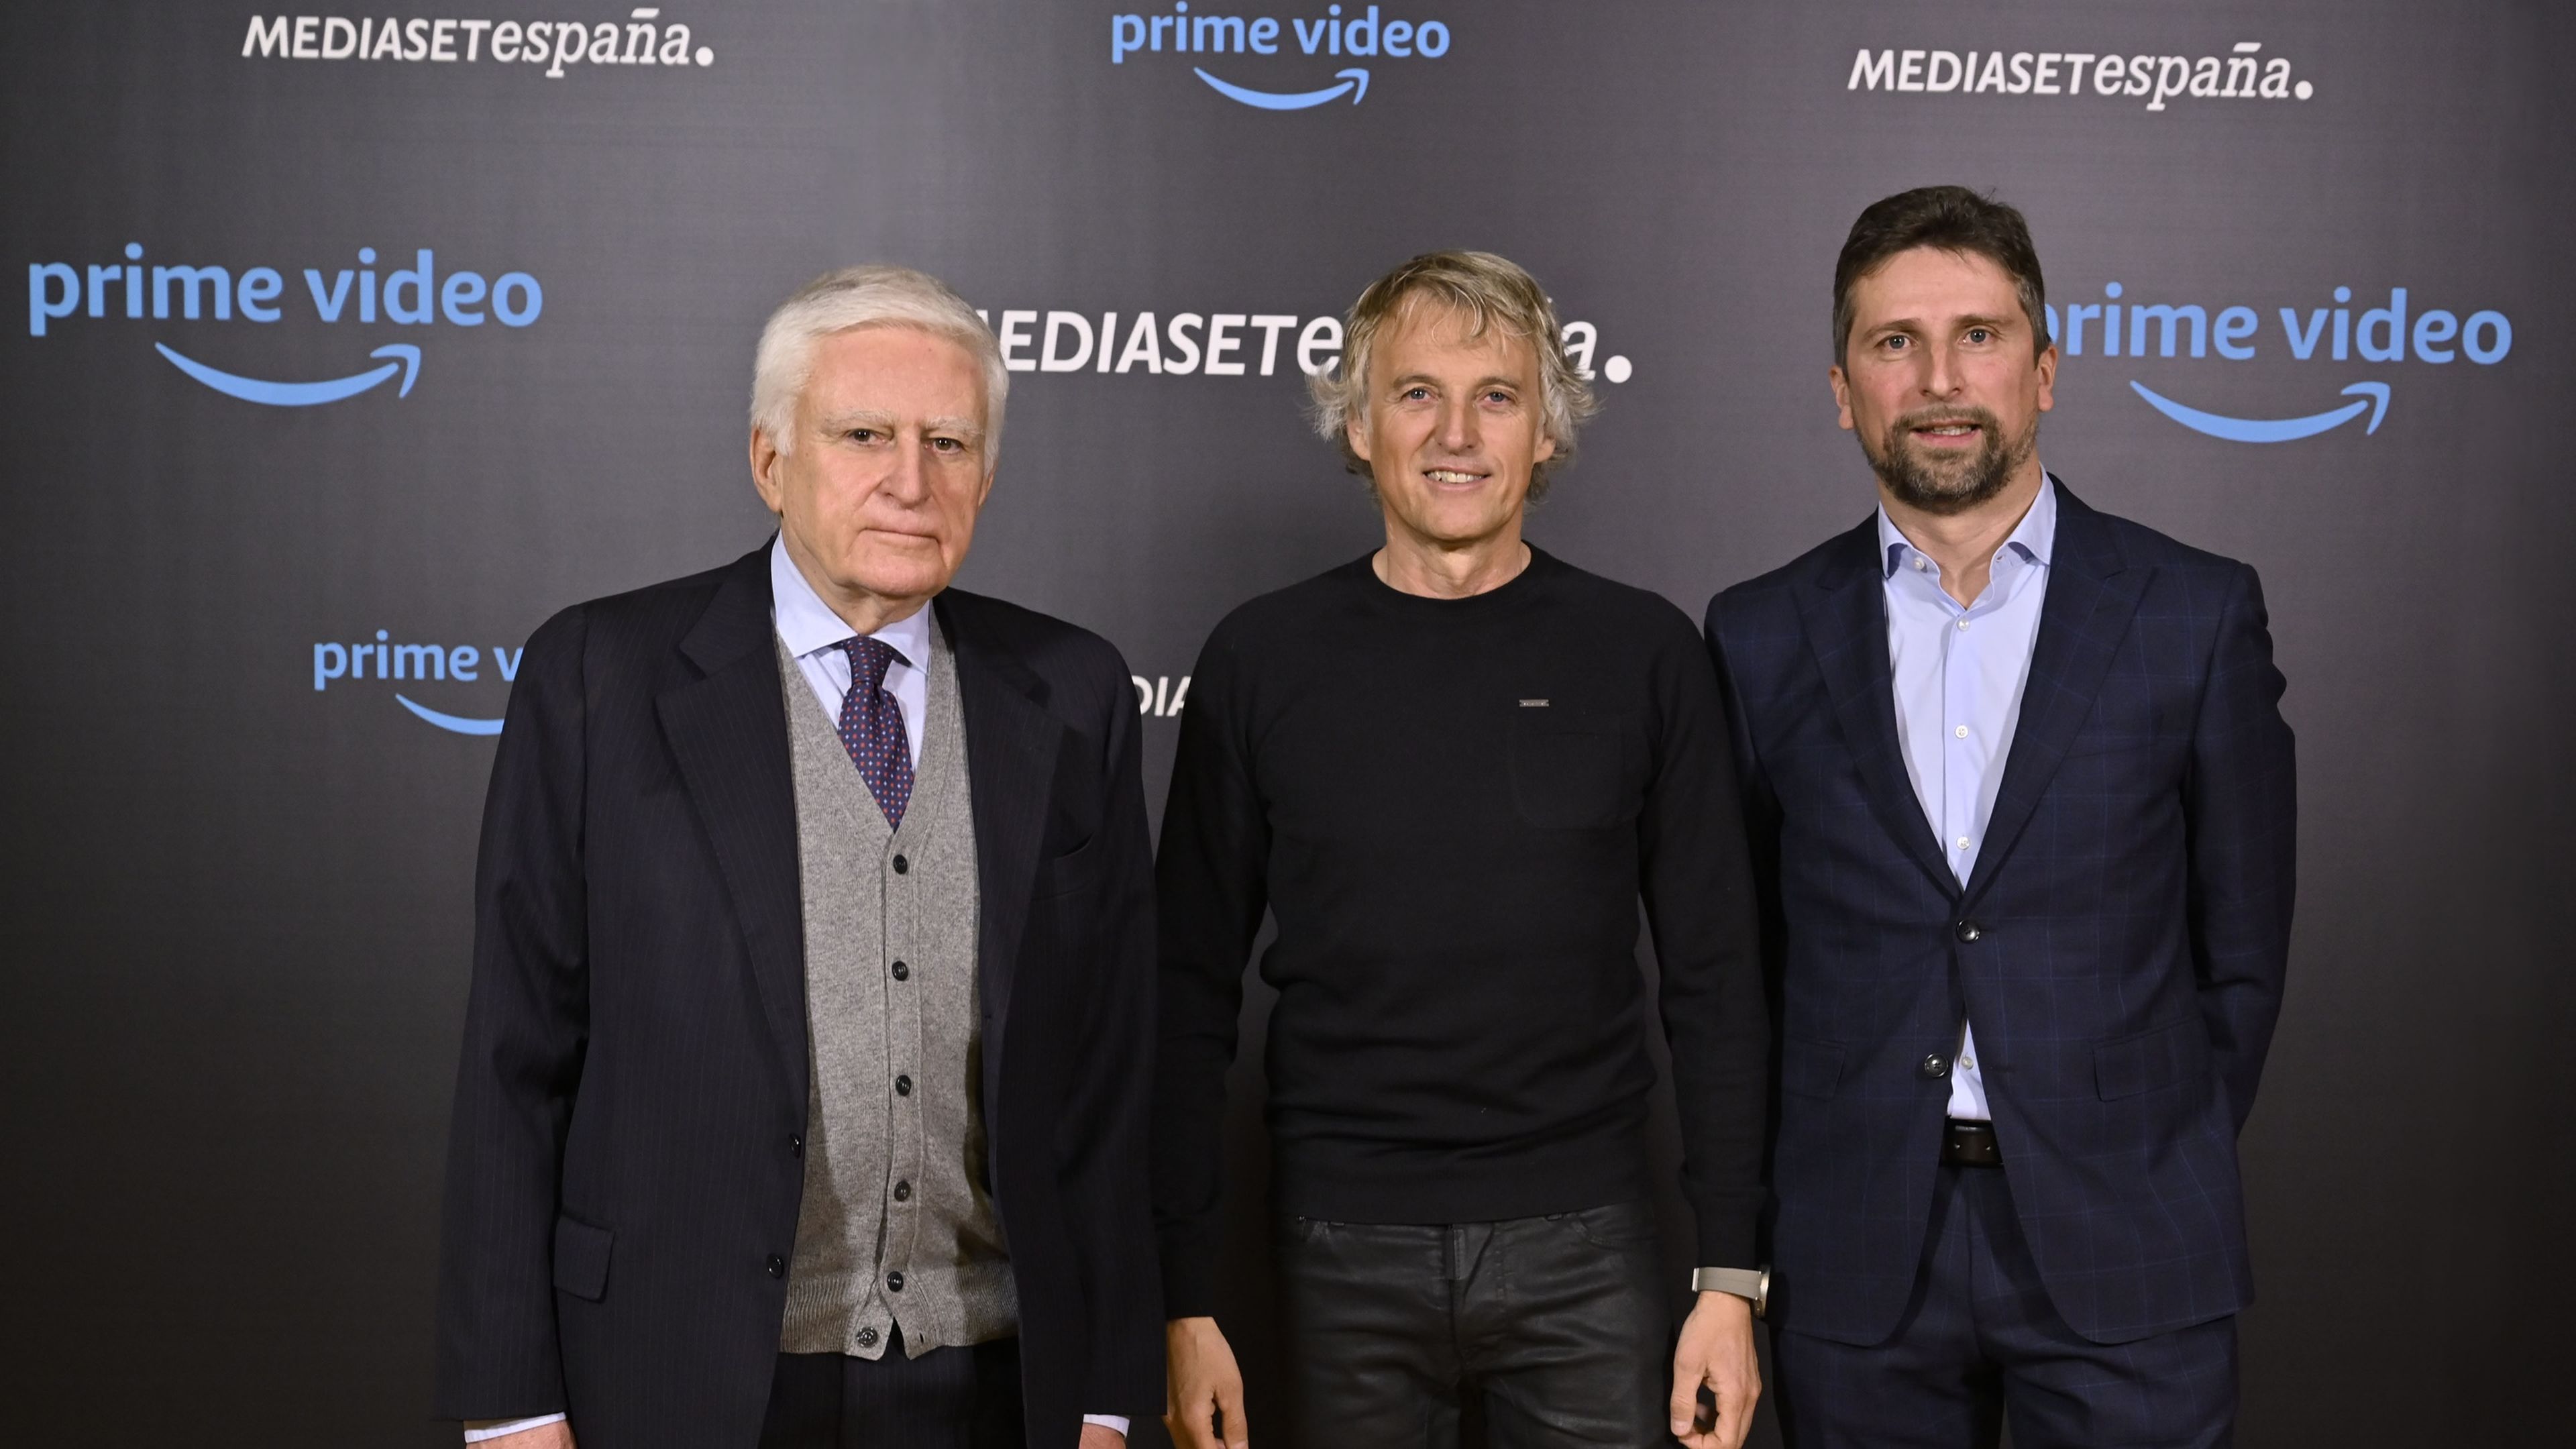 Prime Video y Mediaset llevarán a Jesús Calleja al espacio en su nuevo documental